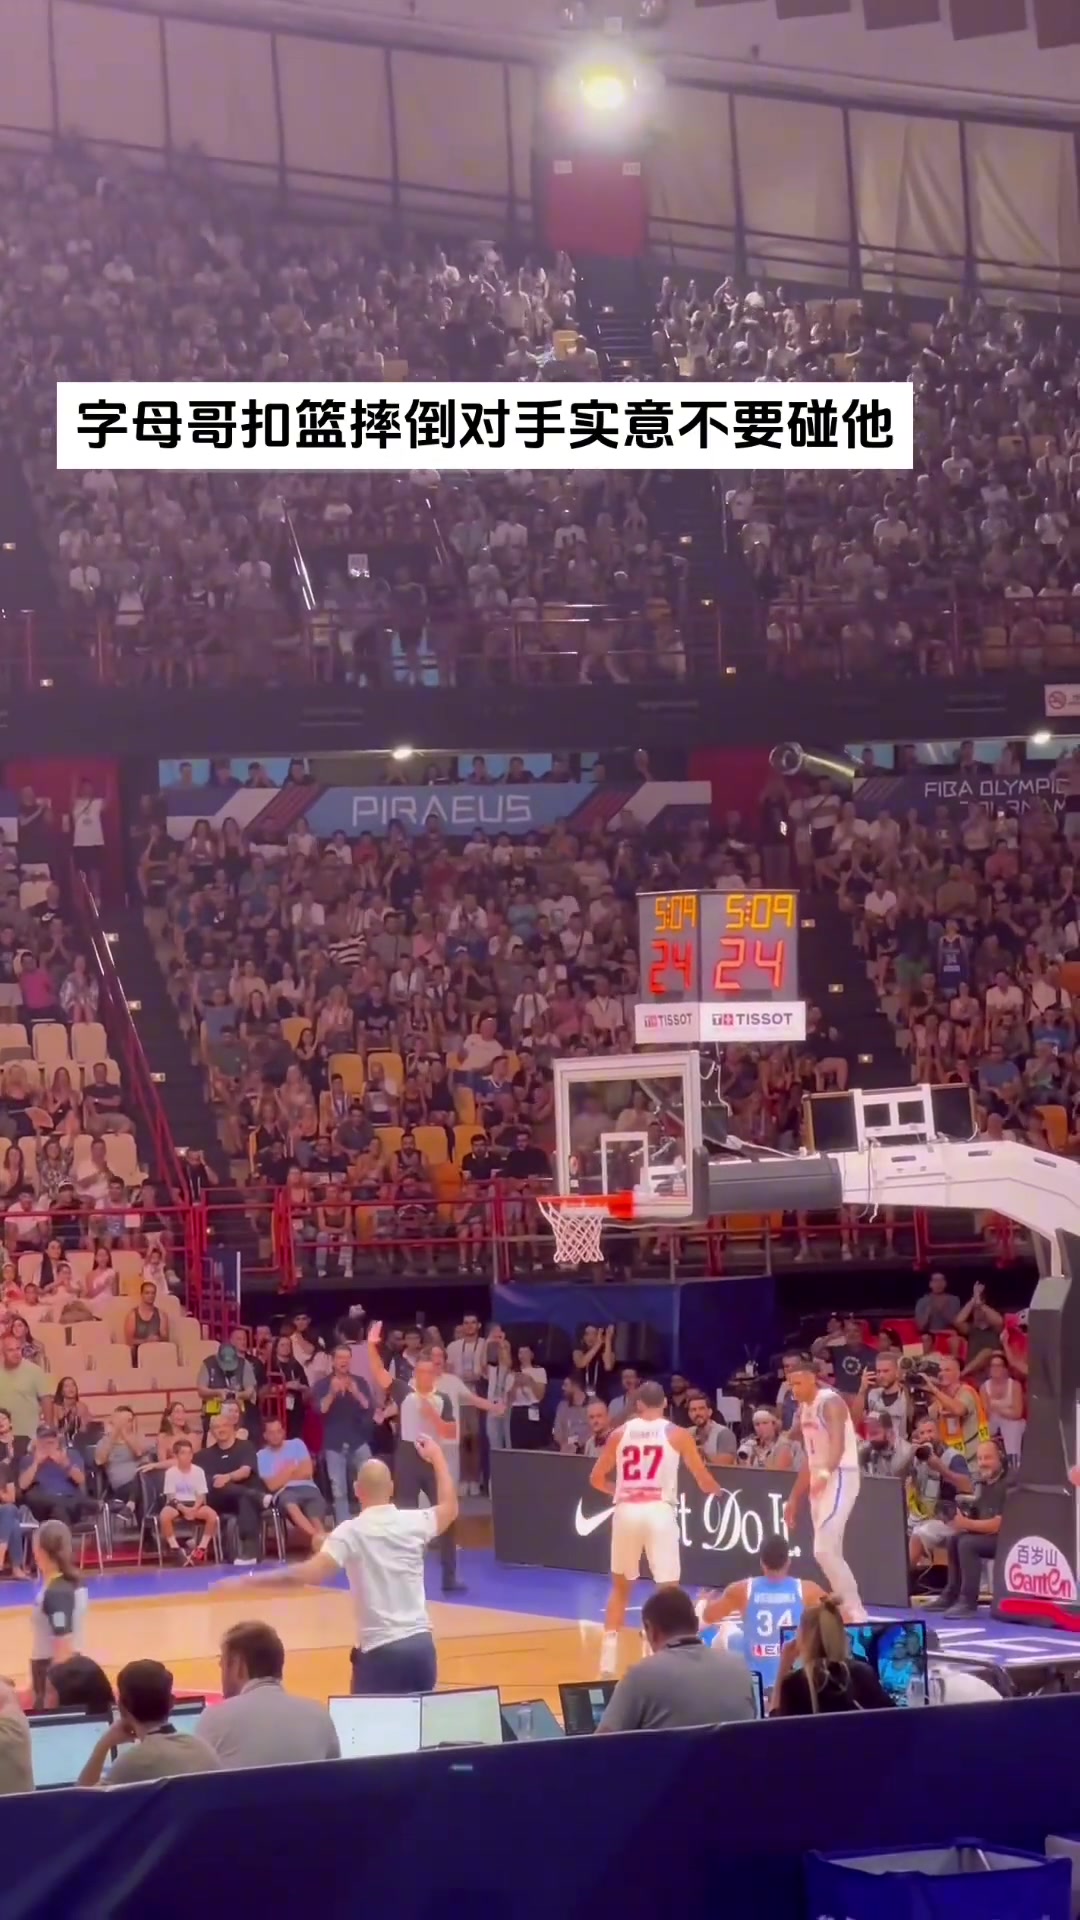 字母哥在FIBA赛场暴扣后 对手拉着队友示意不要扶起